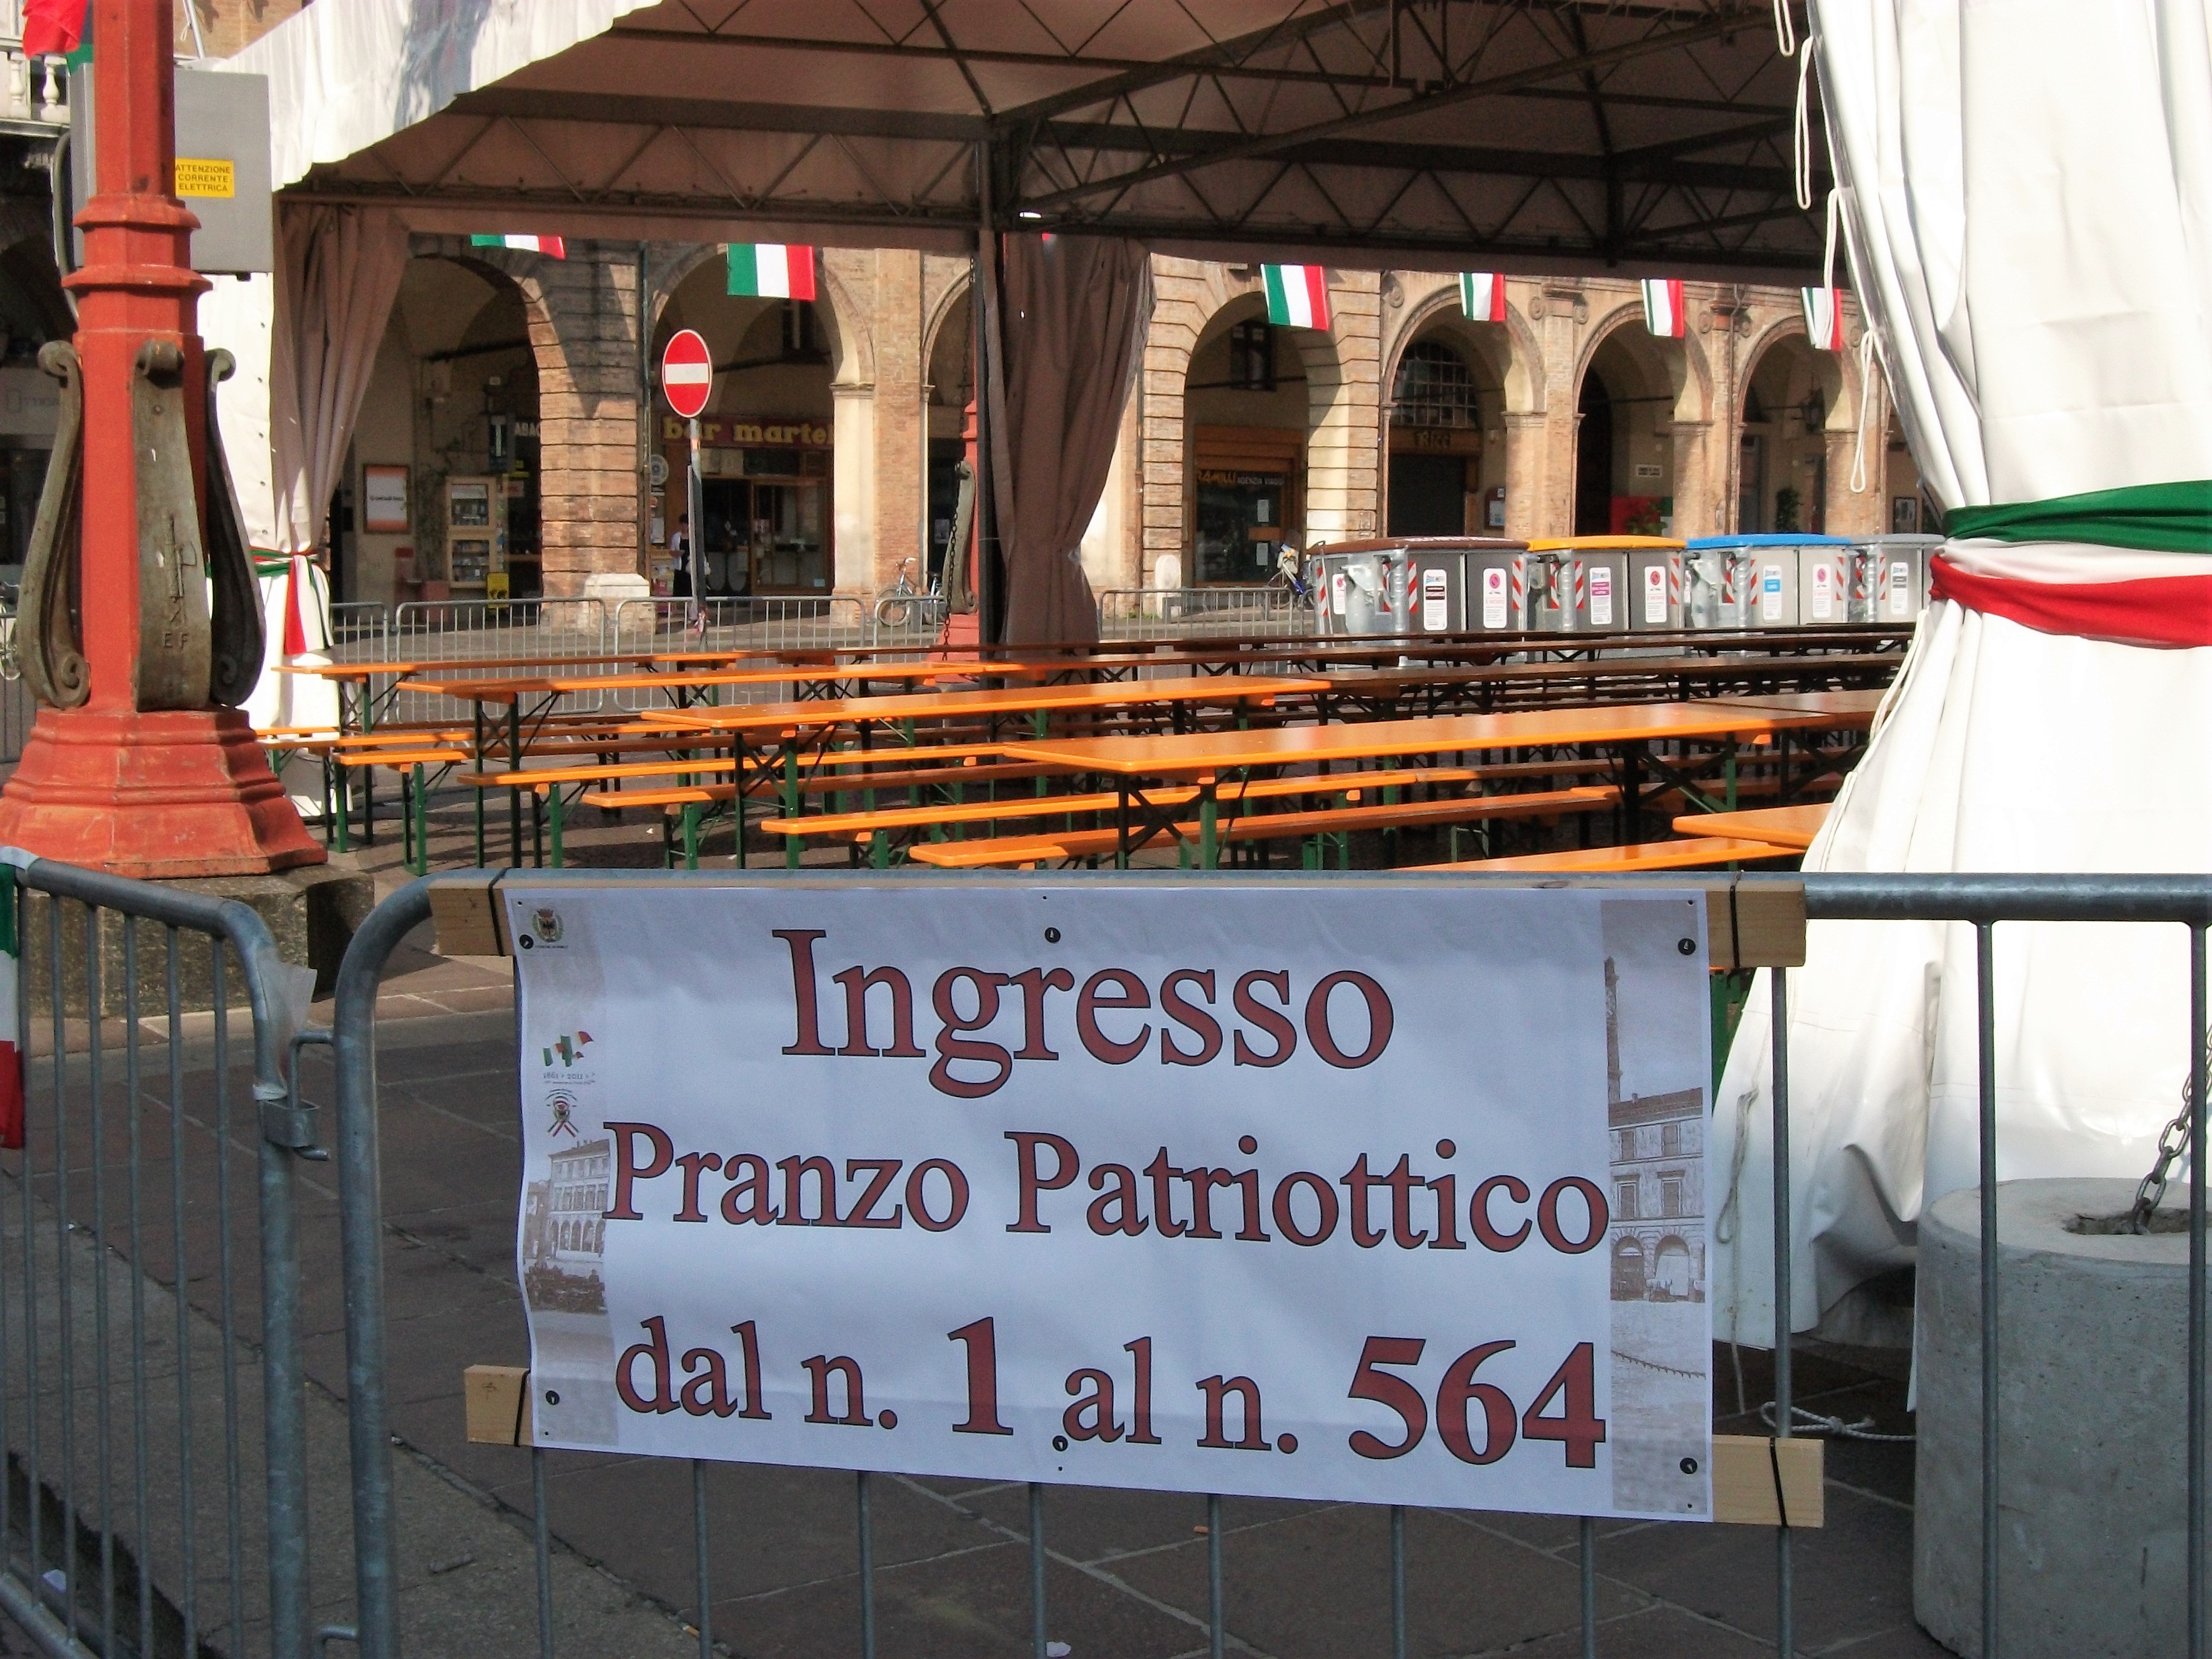 Figg. 6-7. Gran pranzo patriottico a Forlì, 2011.